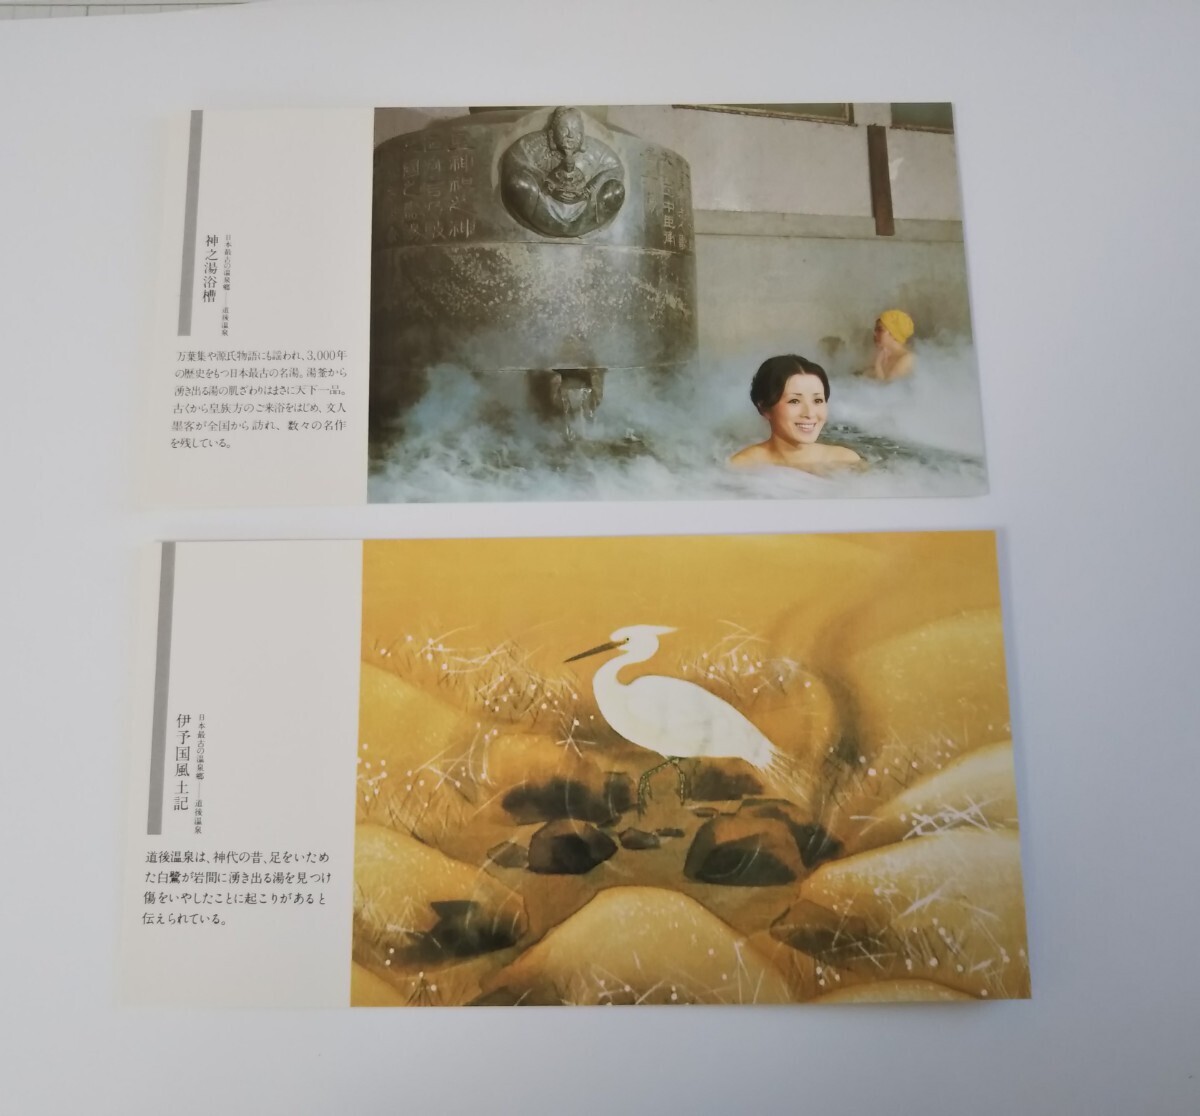  Япония самый старый. горячие источники . дорога после горячие источники открытка Showa Retro открытка с видом 